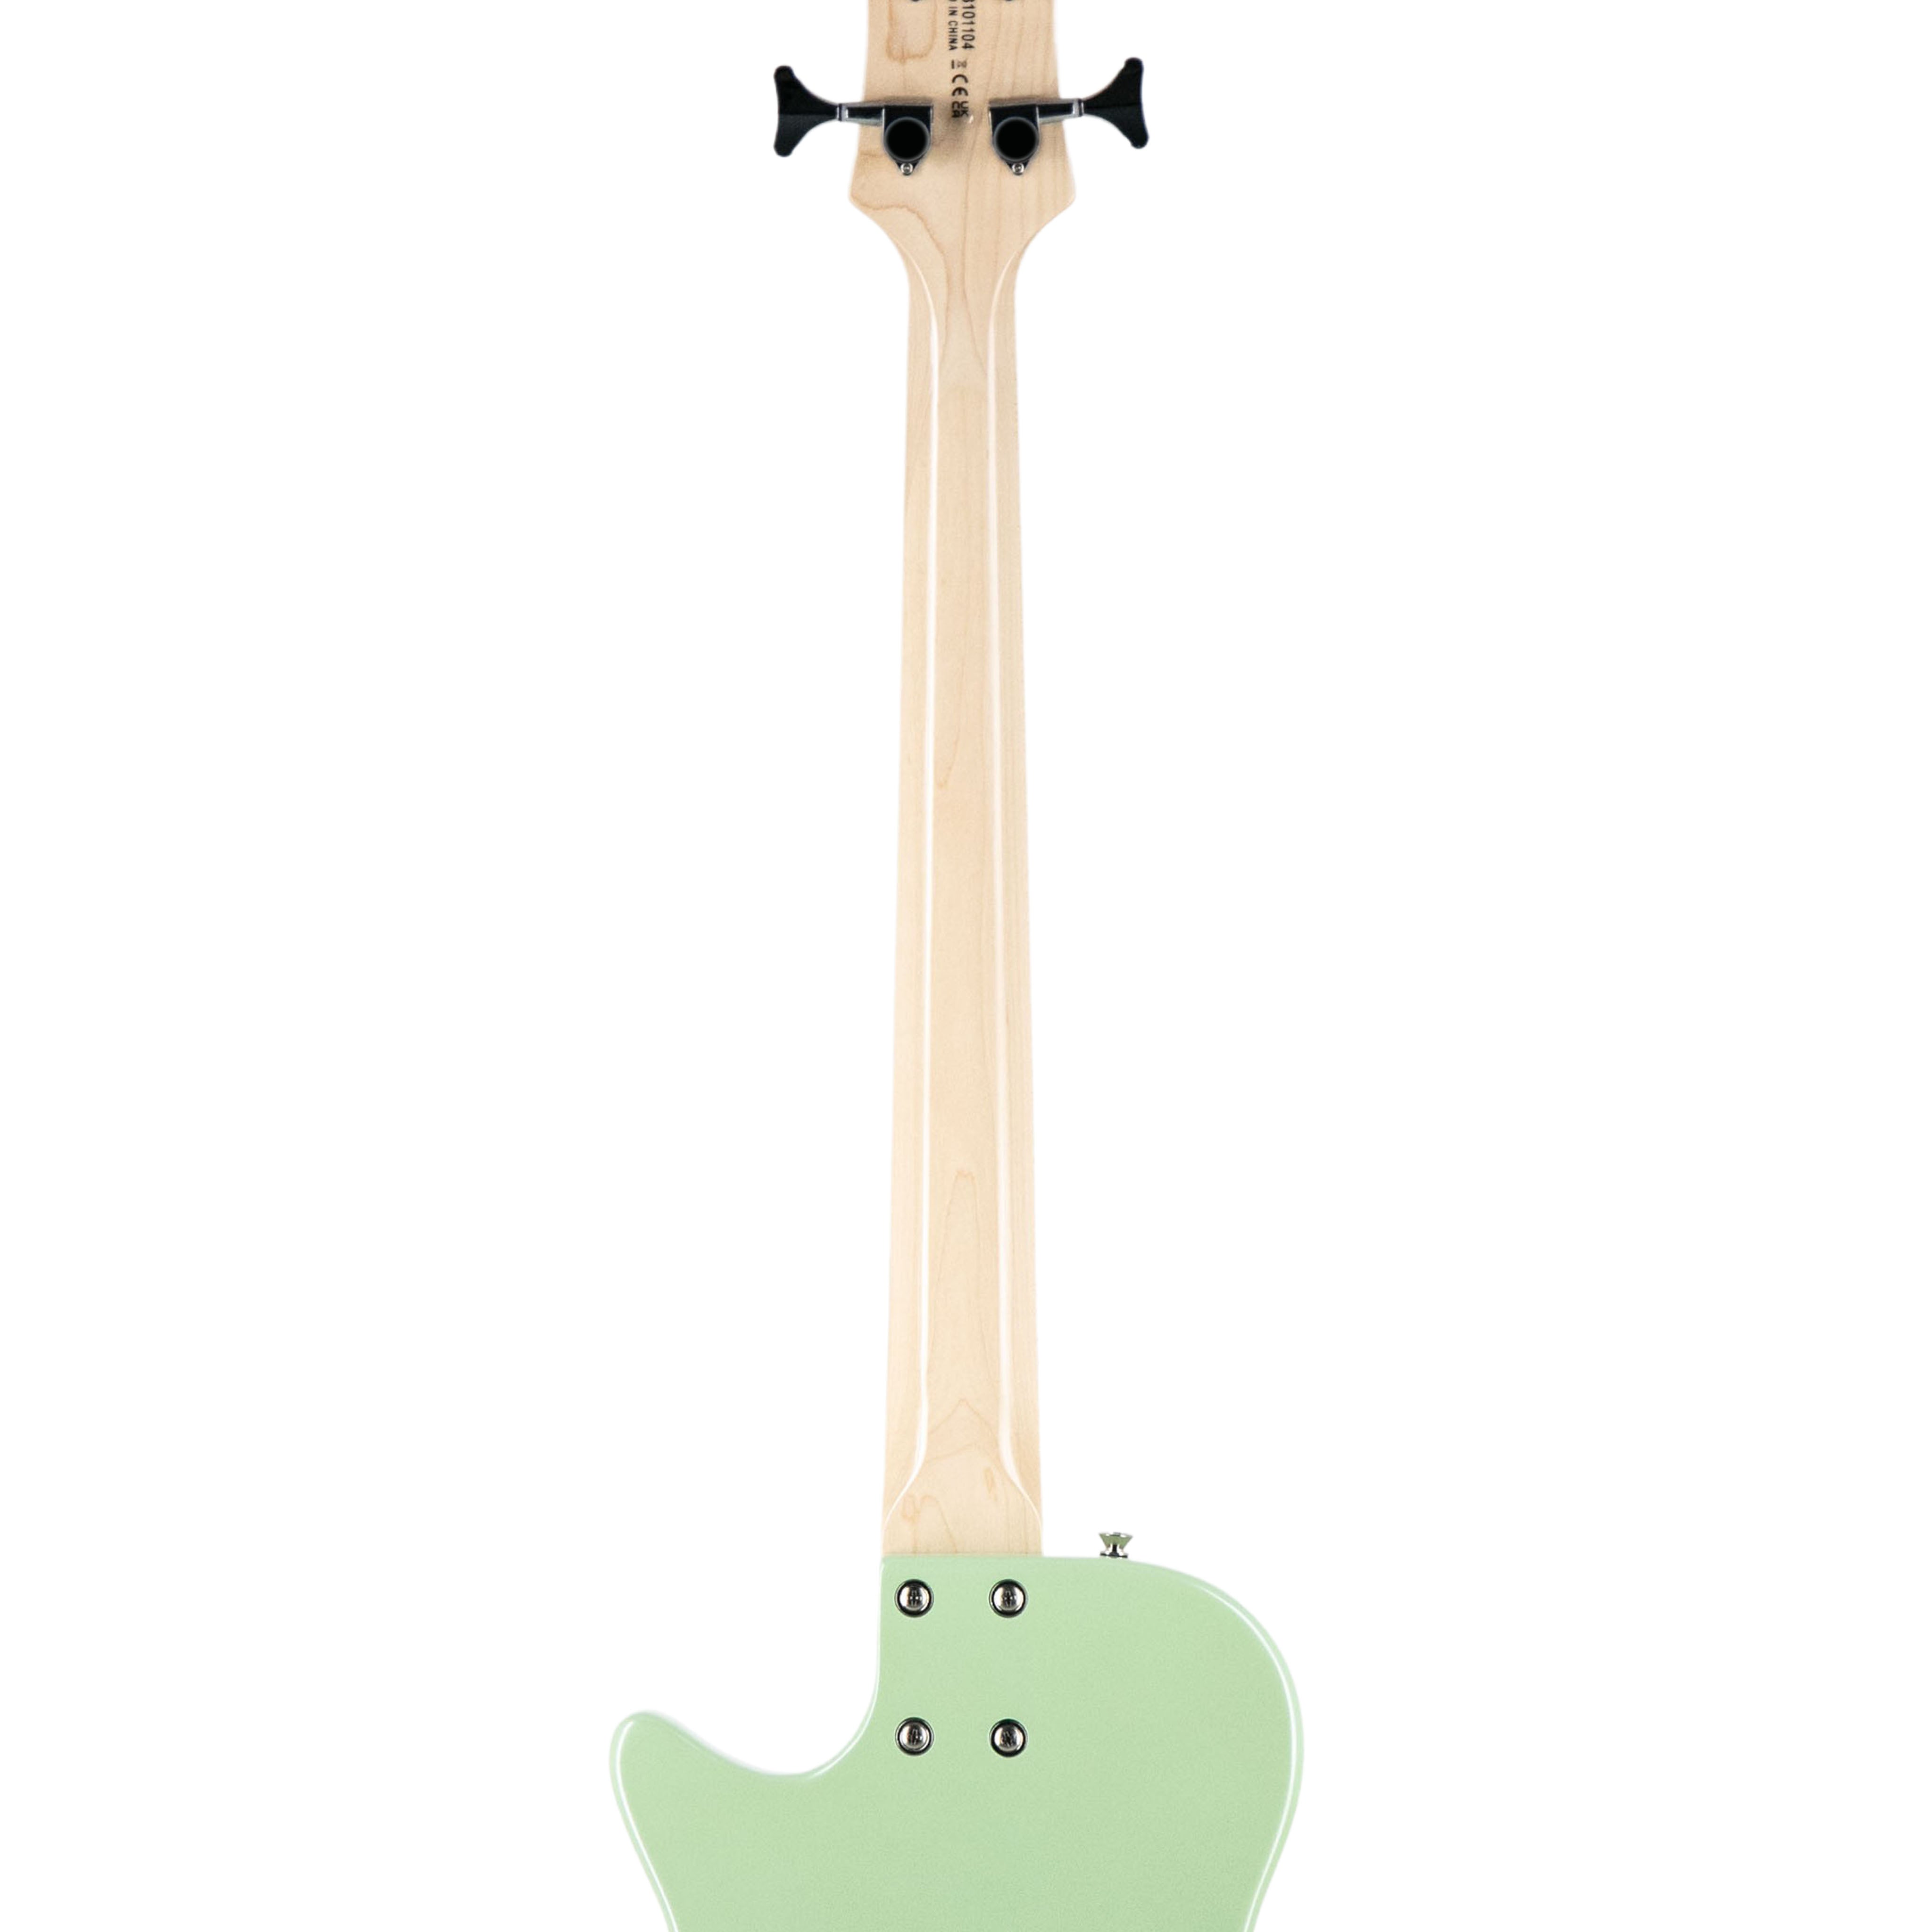 Gretsch FSR G2228B Electromatic Junior Jet Bass II Guitar, Broadway Jade